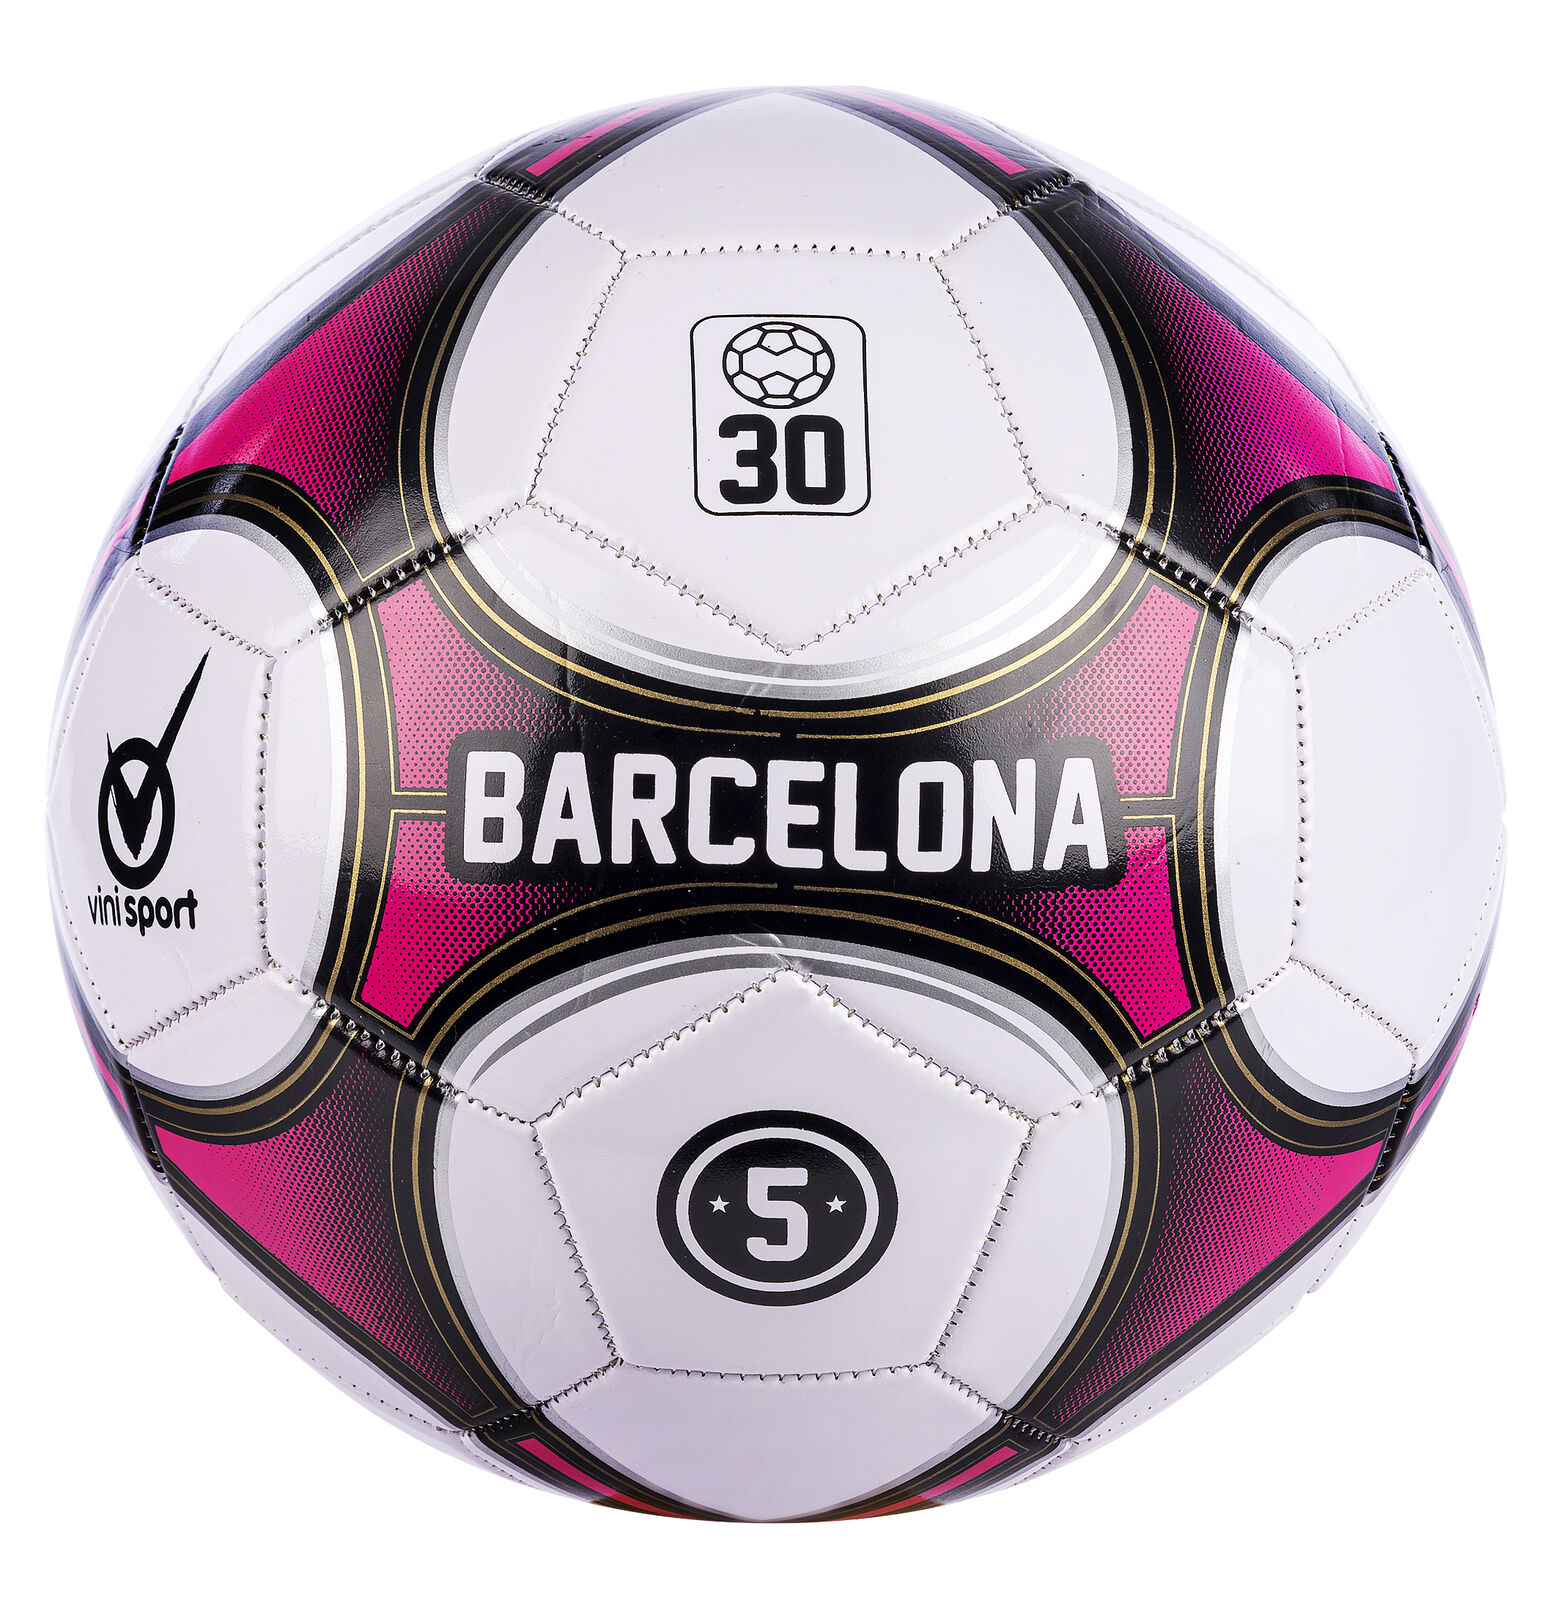 Vini - Barcelona Football, Size 5 (24154) - Leker